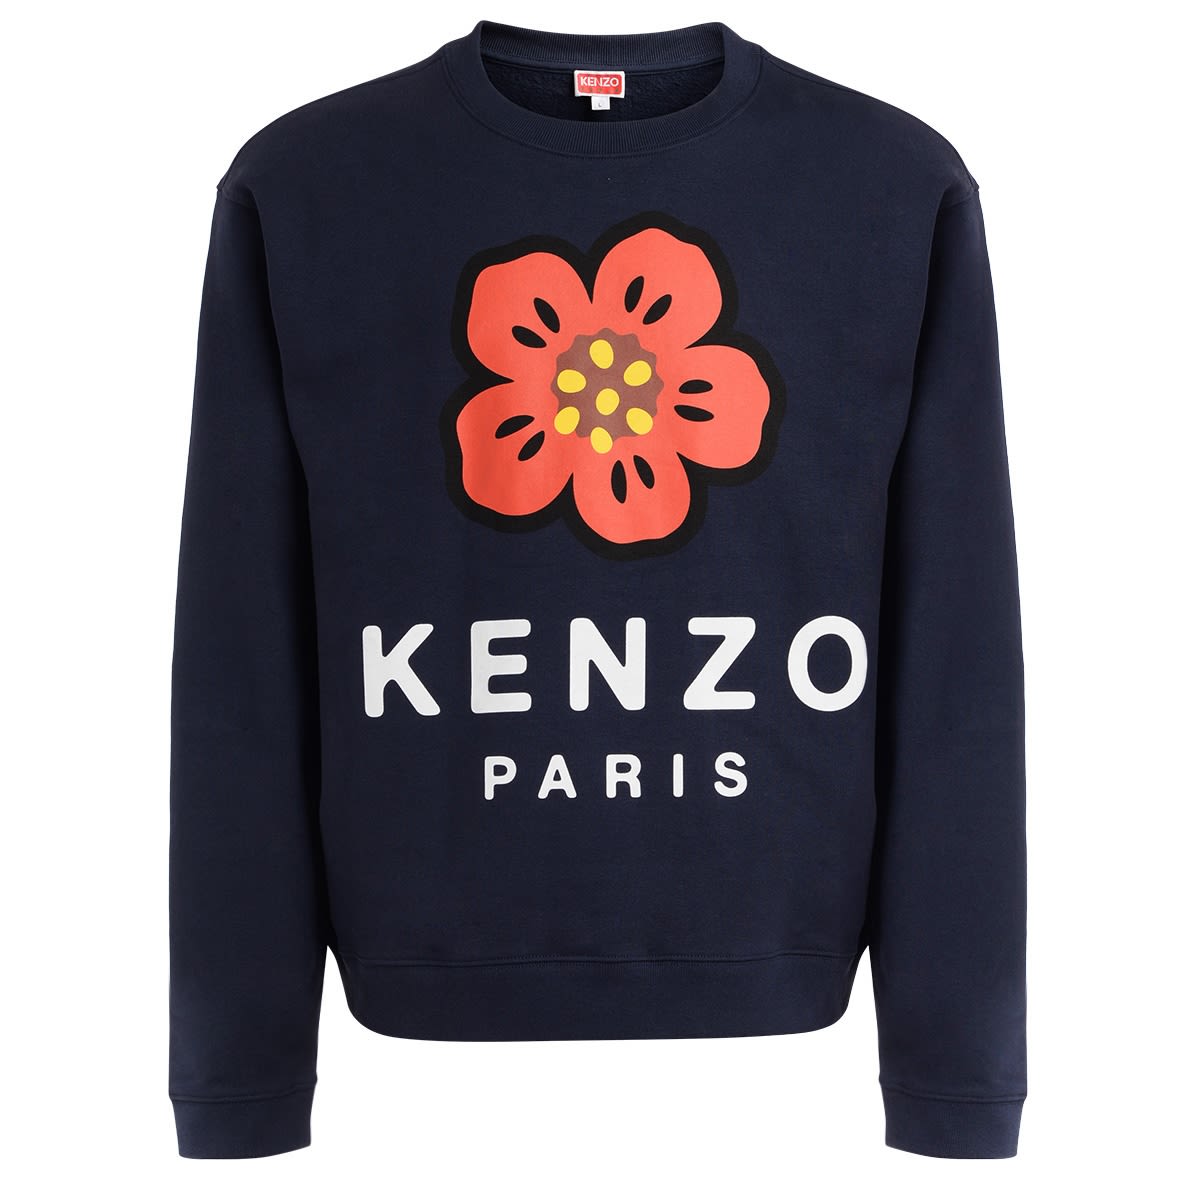 KENZO KENZO BOKE FLOWER BLUE SWEATSHIRT WITH ORANGE FLOWER